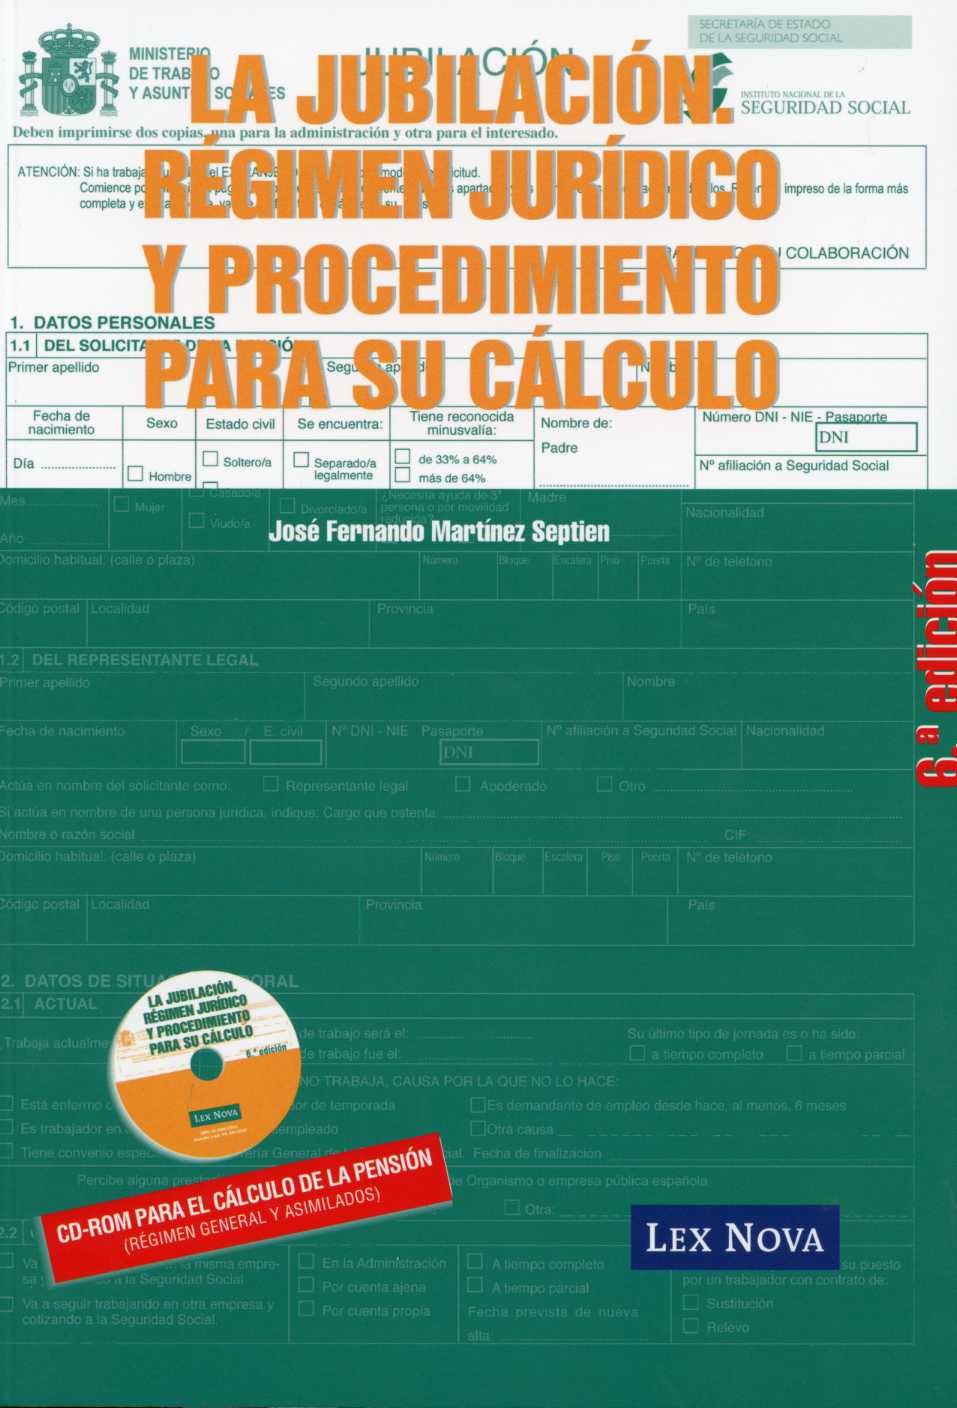 Jubilación, La: Régimen Jurídico y Procedimiento para su Cálculo, 6ª Ed. Con CD-ROM para el Cálculo de la Pensión.-0